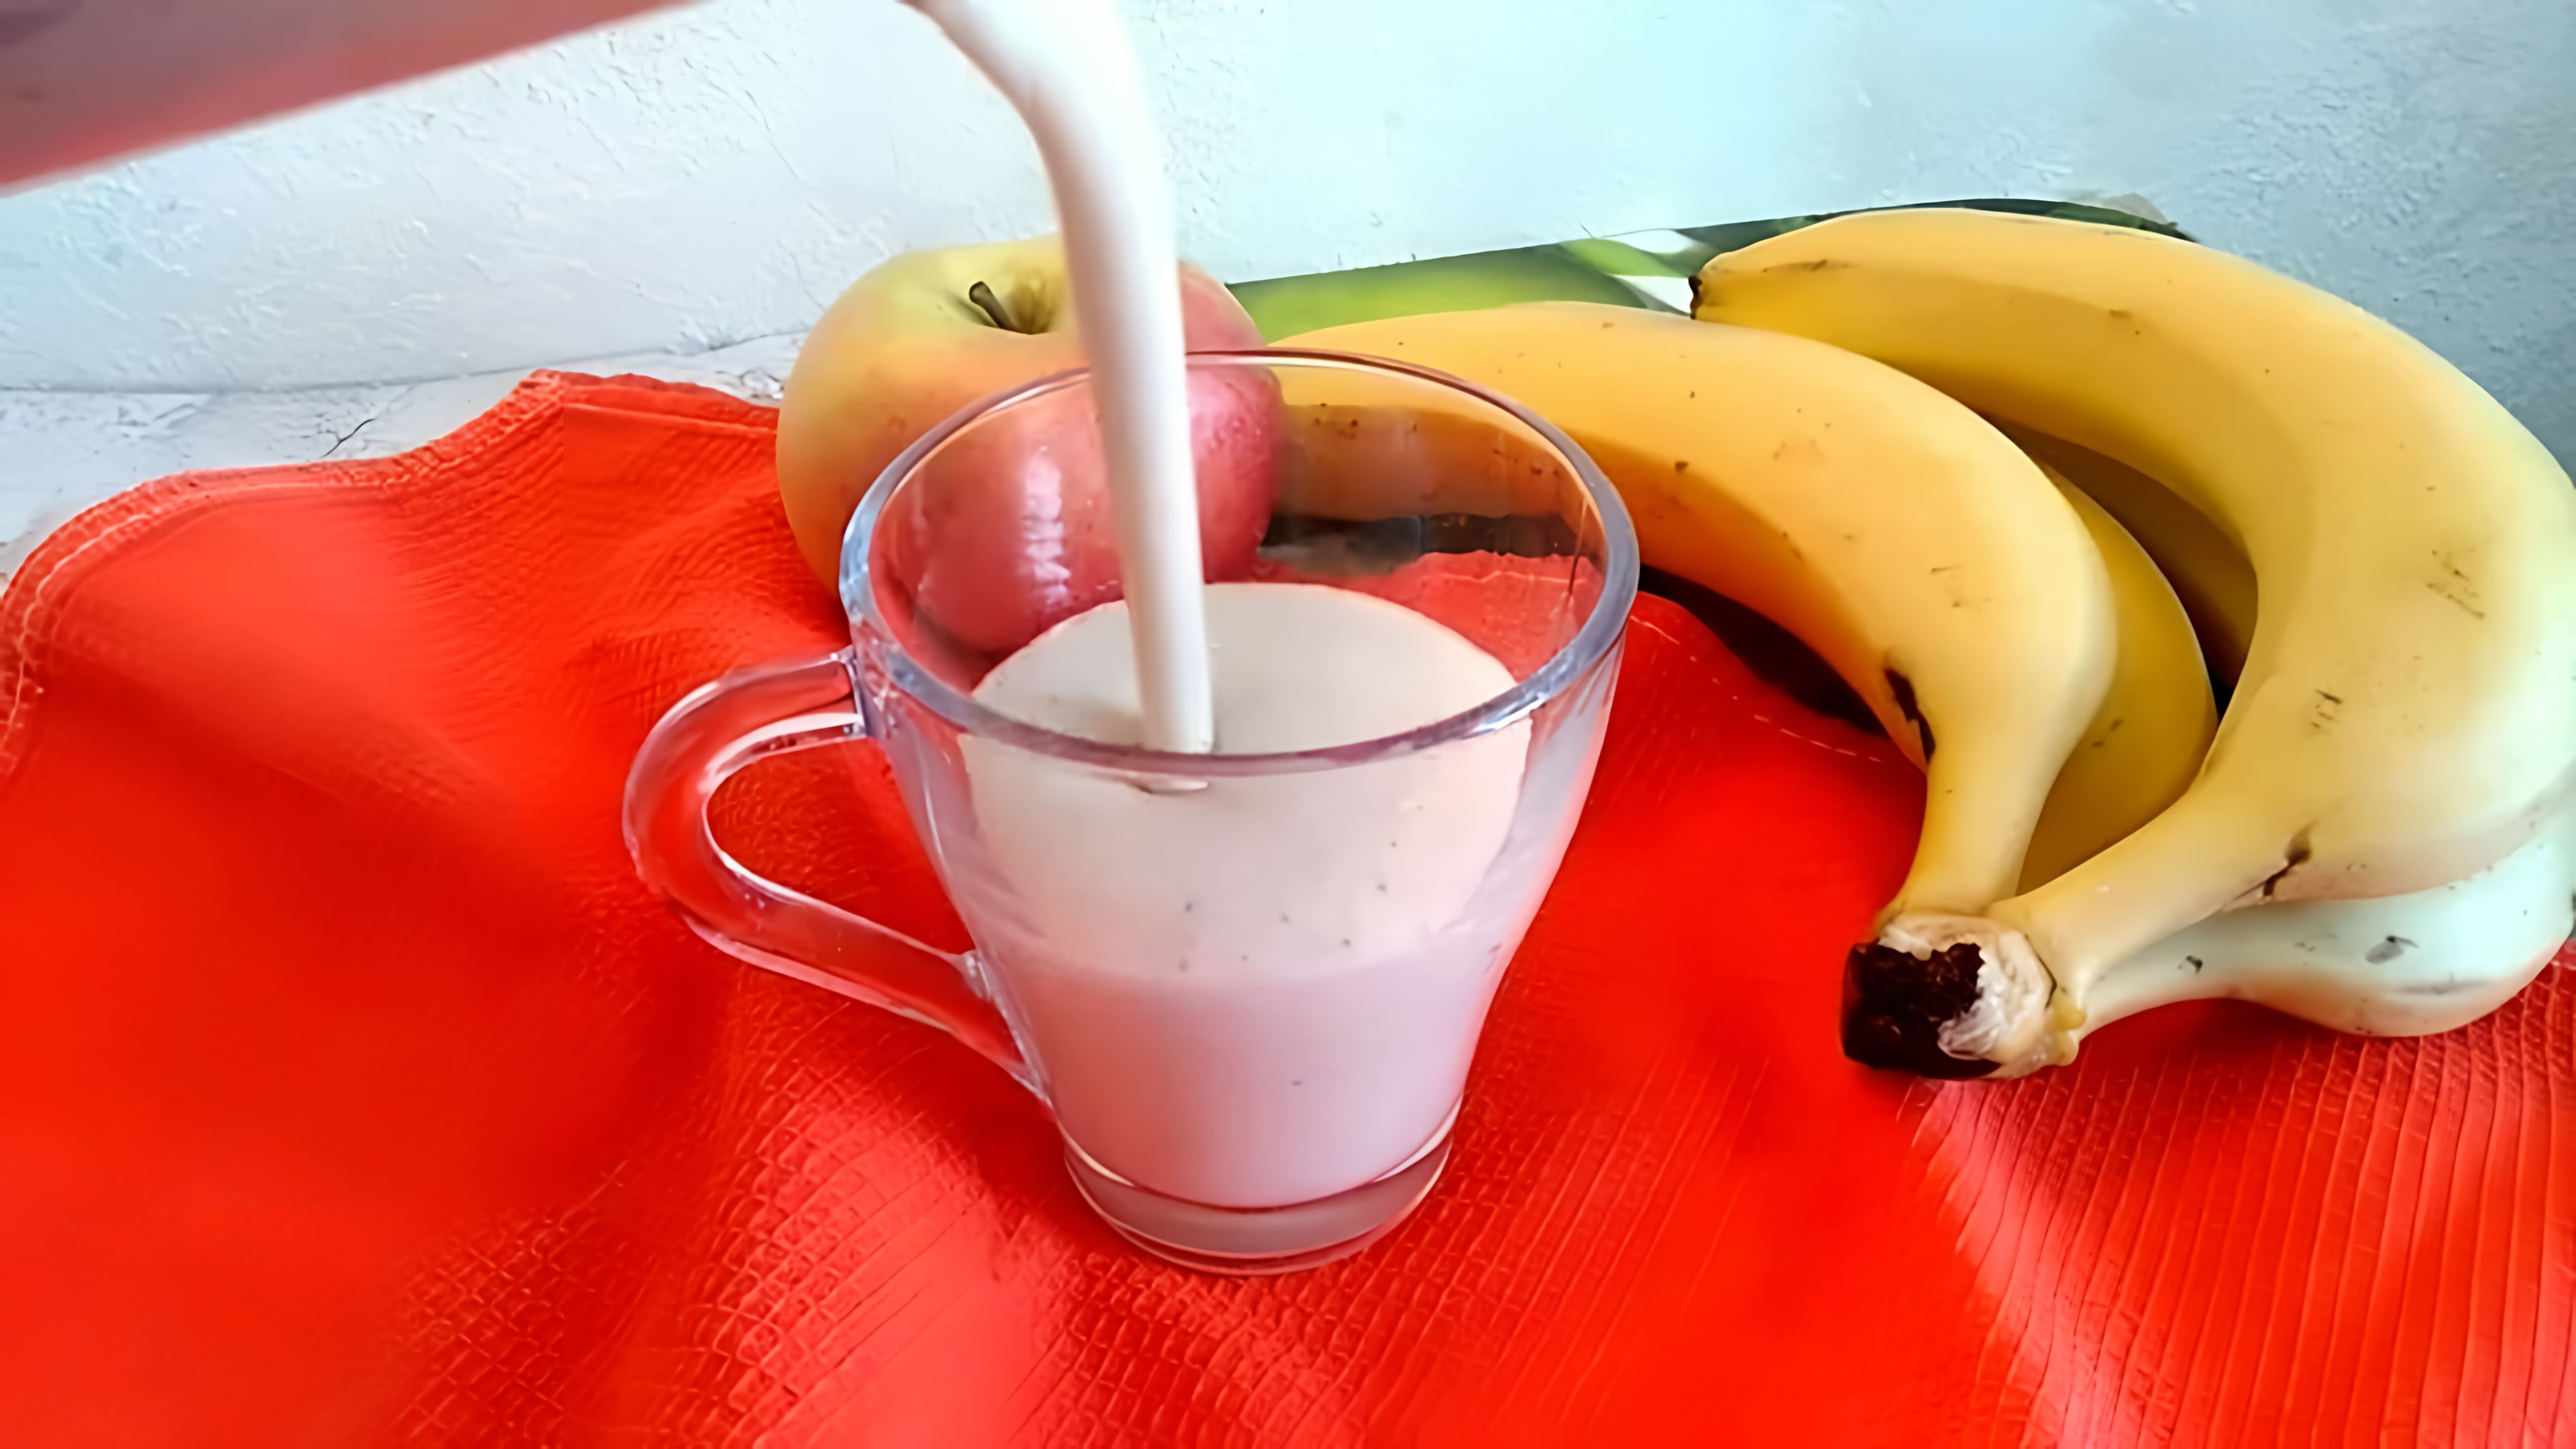 В этом видео демонстрируется процесс приготовления бананово-яблочного смузи